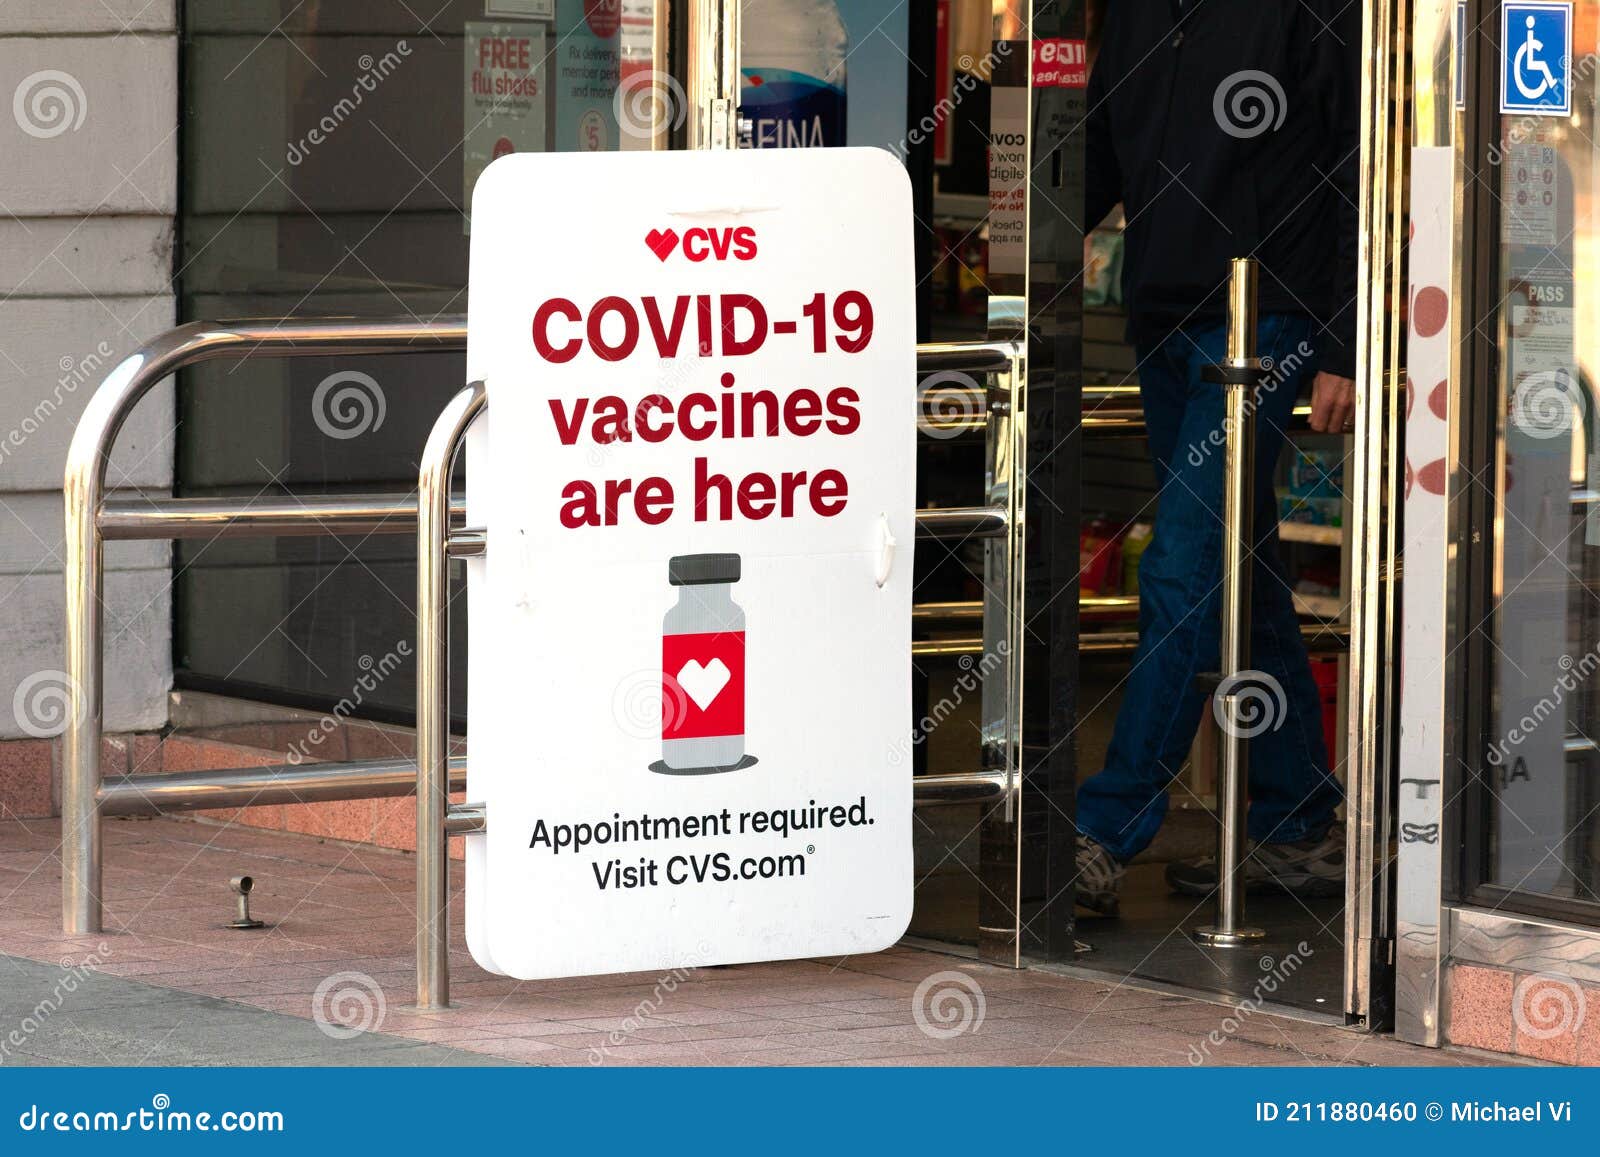 covid vaccines here sign advertises coronavirus vaccination location cvs pharmacy store palo alto california usa february 211880460